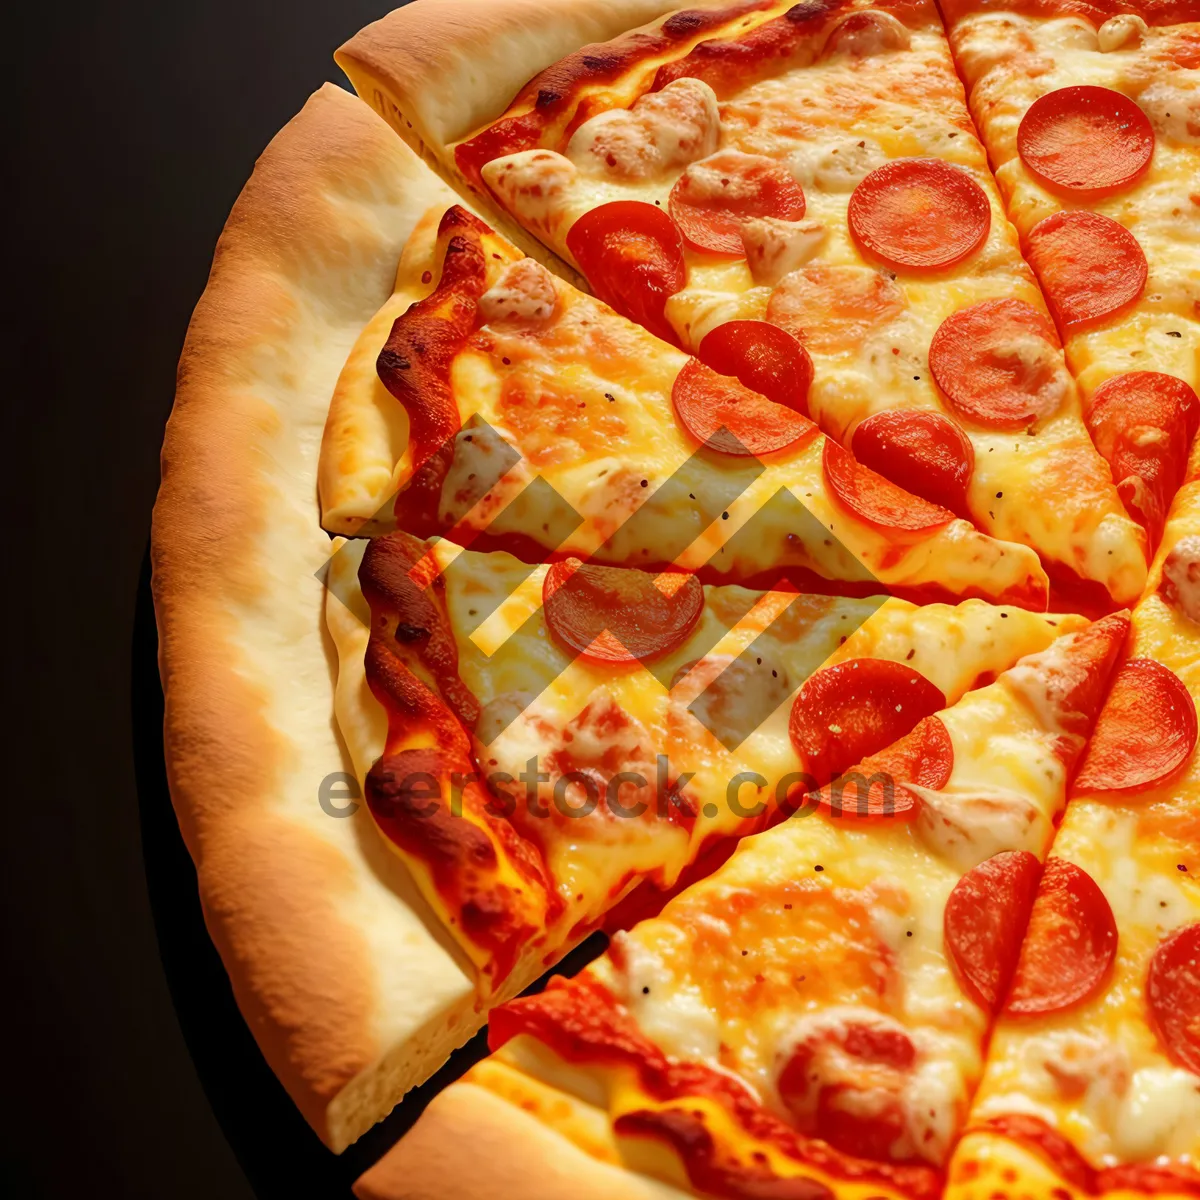 Picture of Delicious Pepperoni Pizza with Mozzarella and Tomato